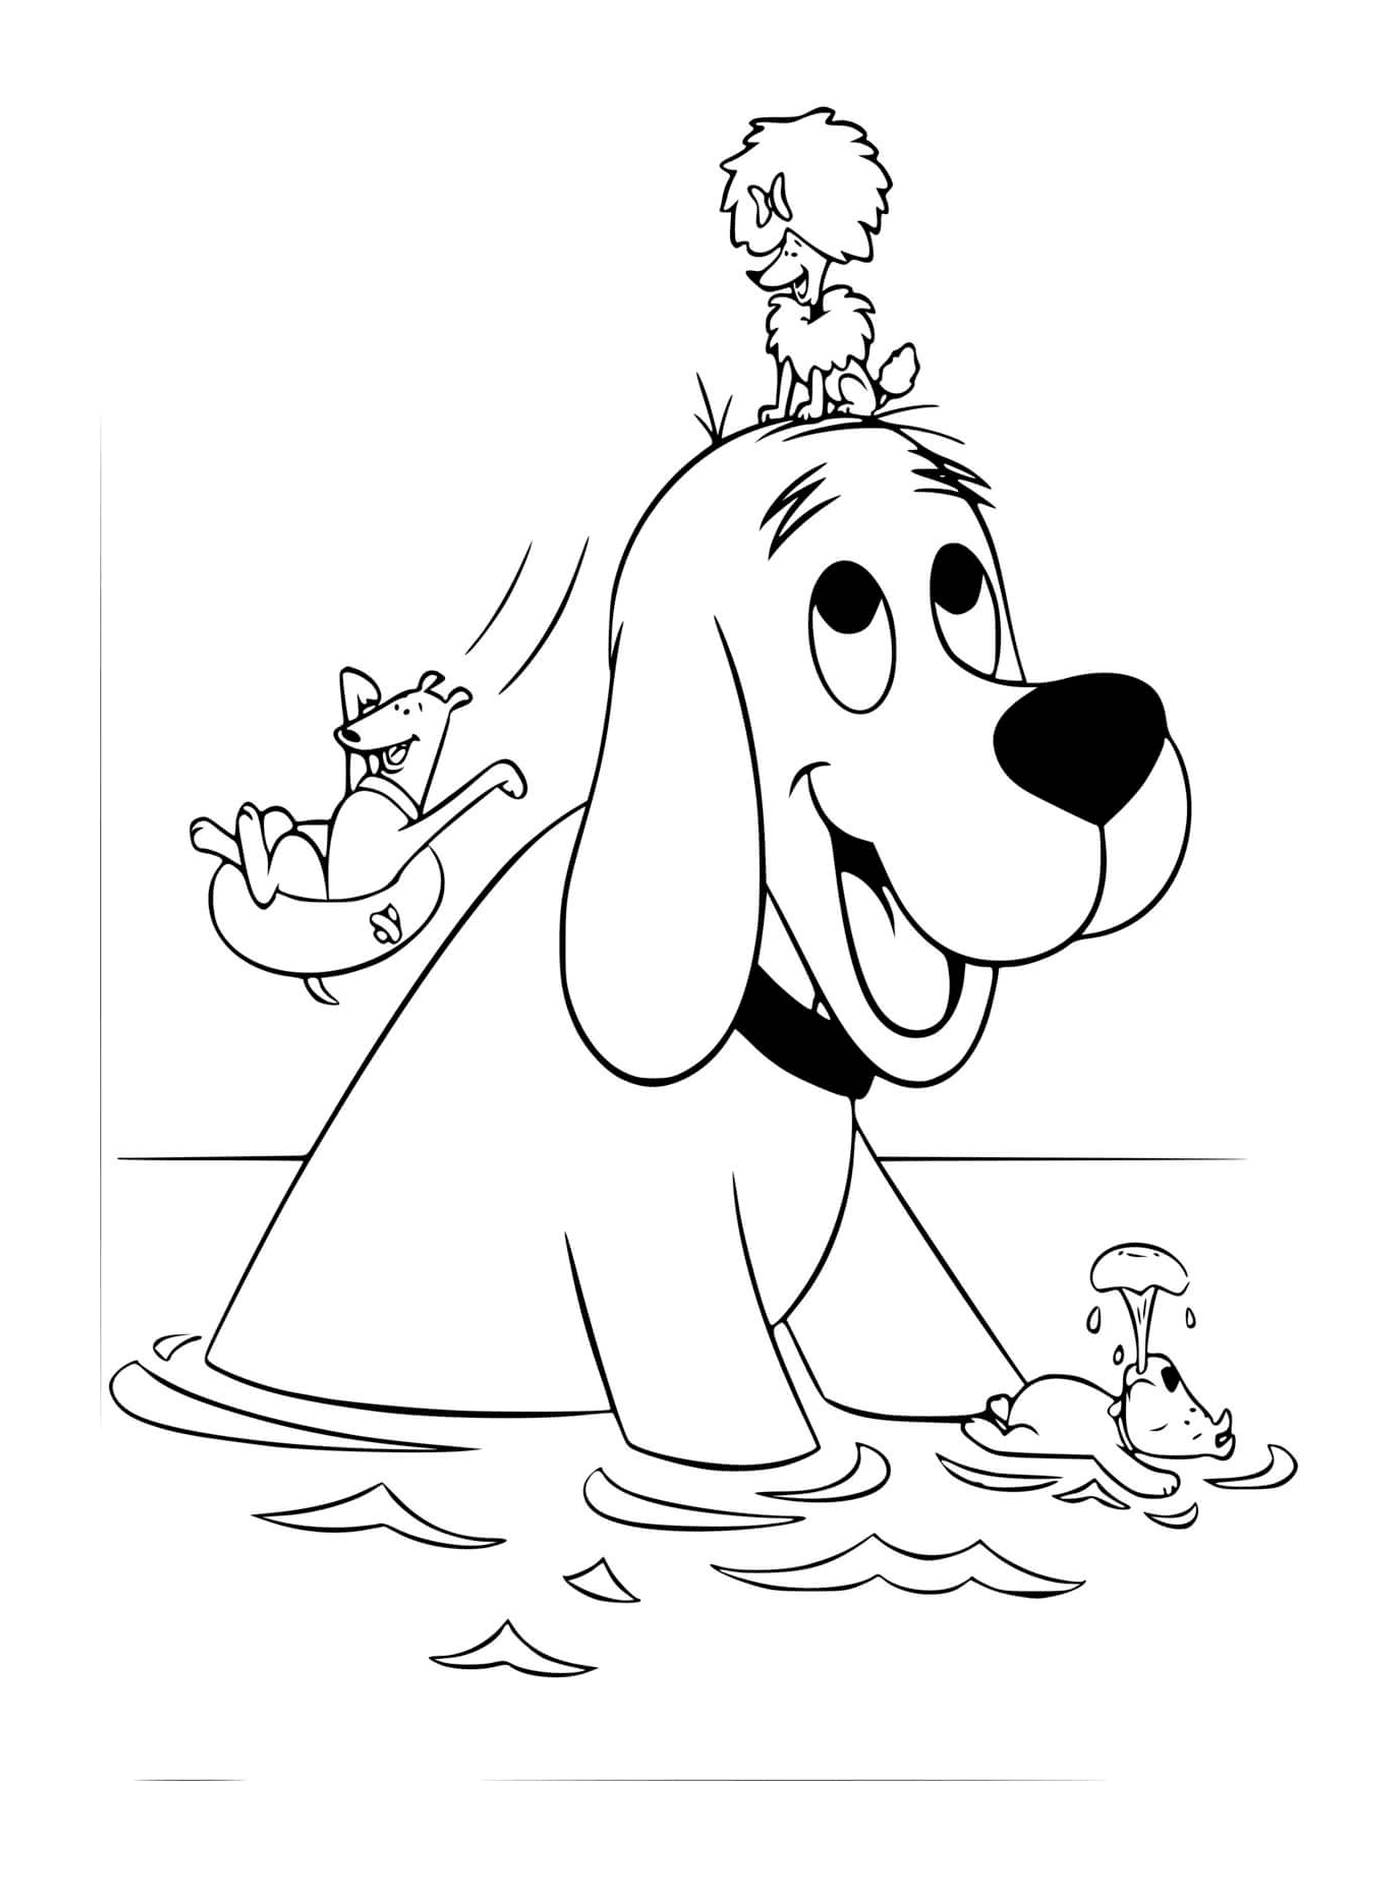  Клиффорд и его собачие друзья купаются на озере 